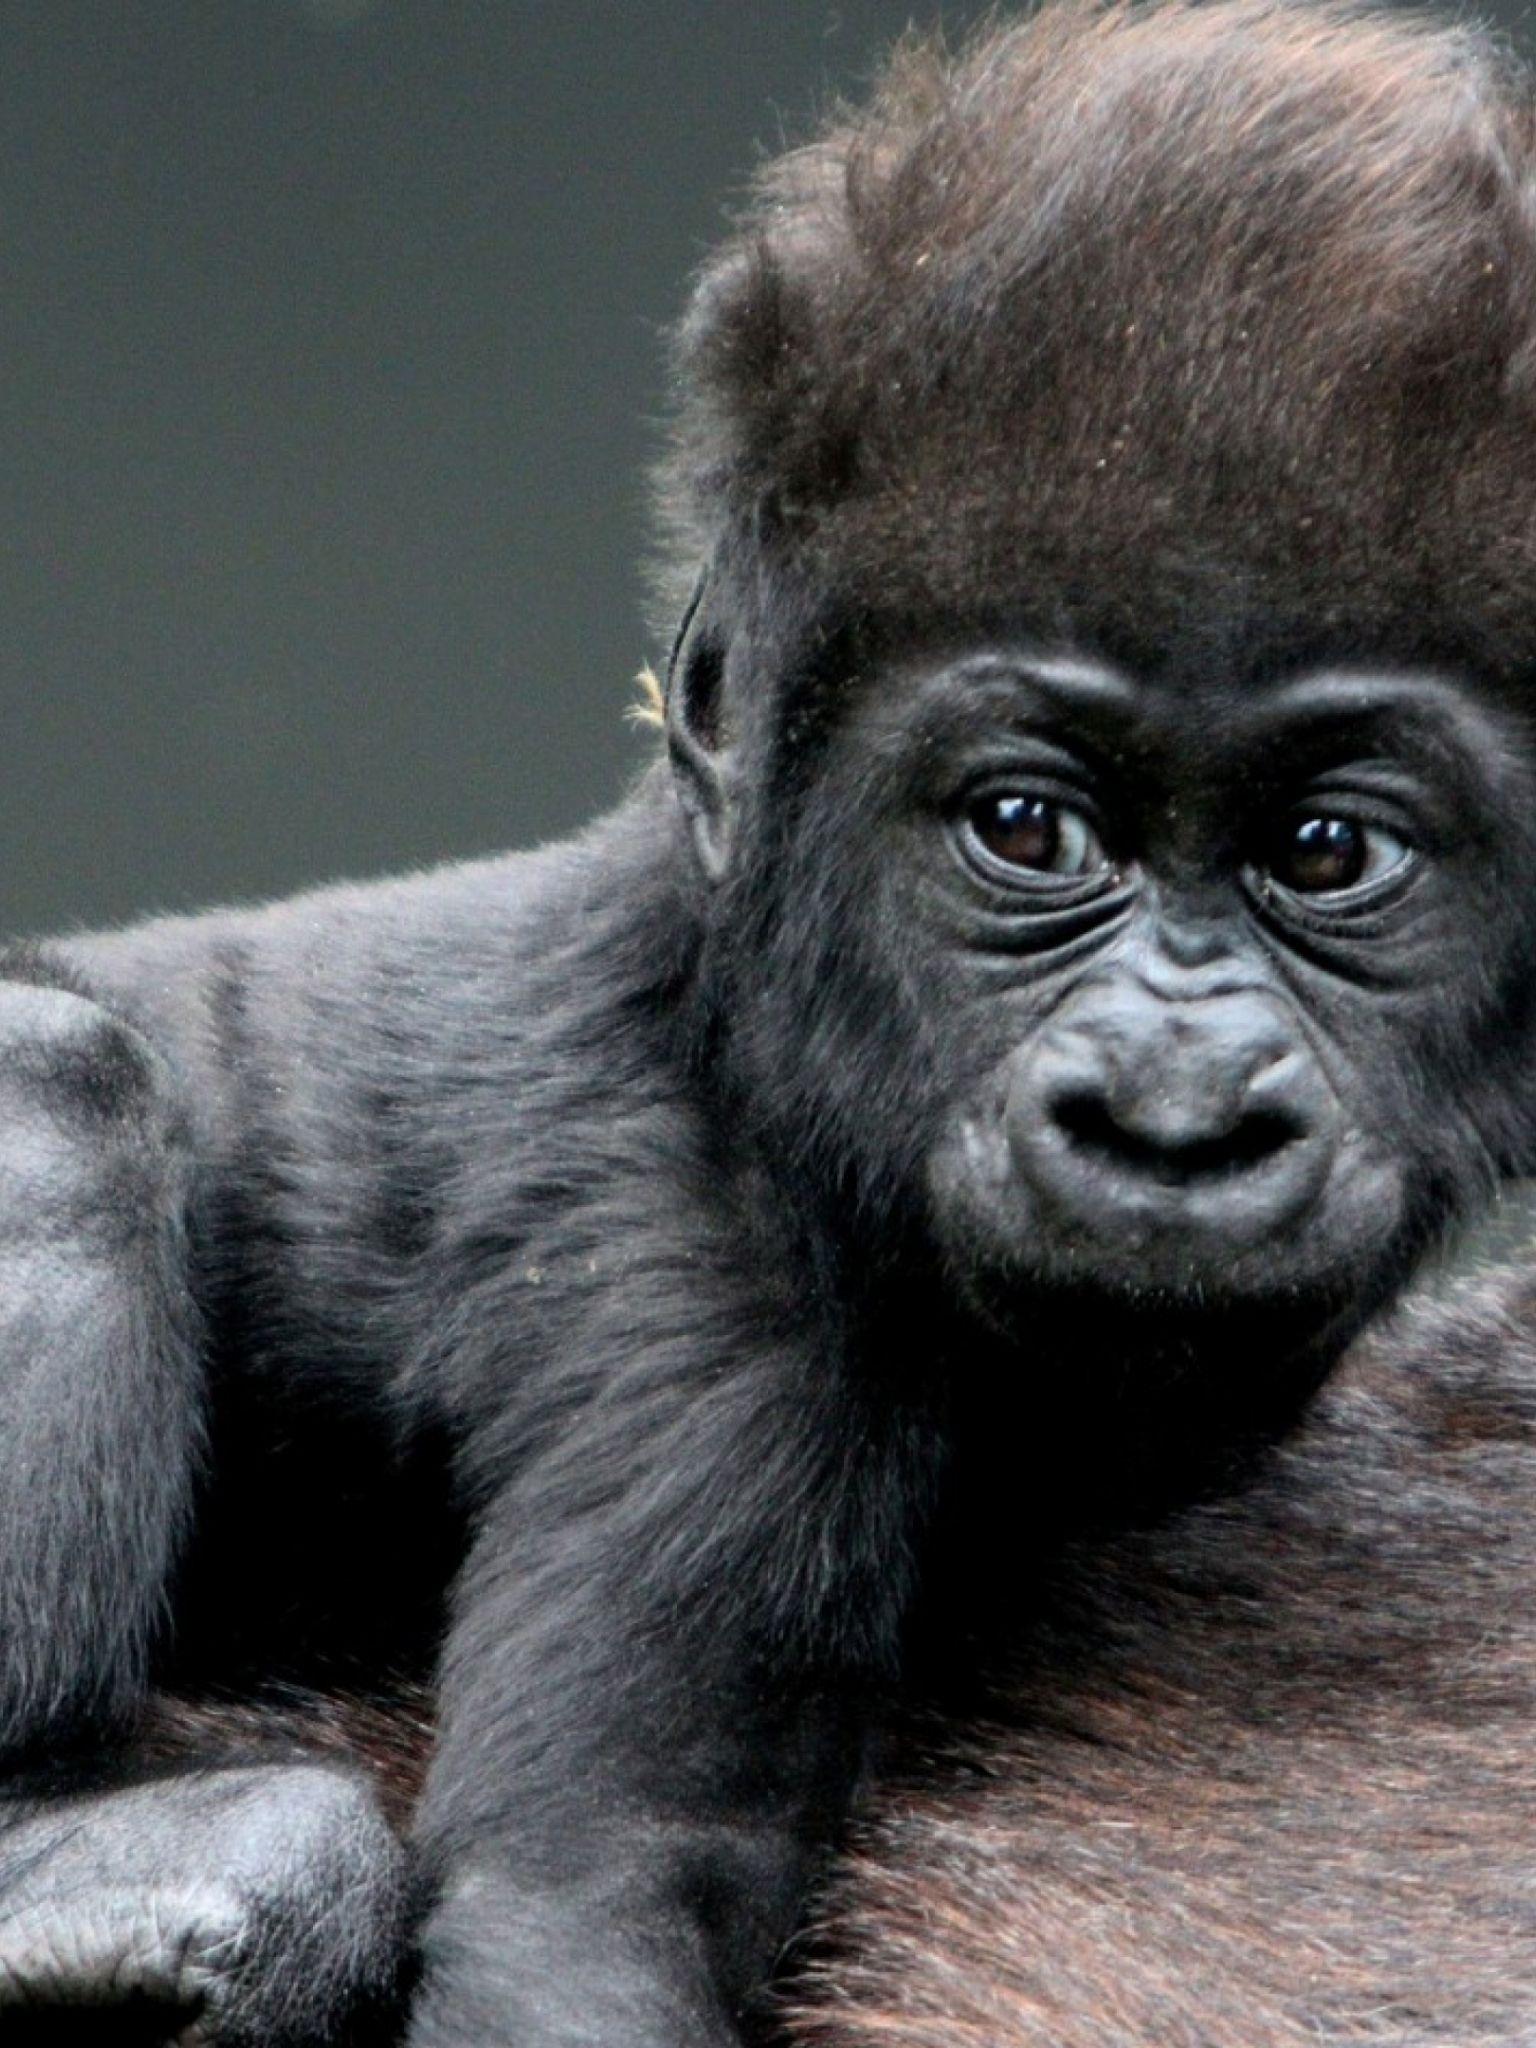 cute baby mountain gorillas